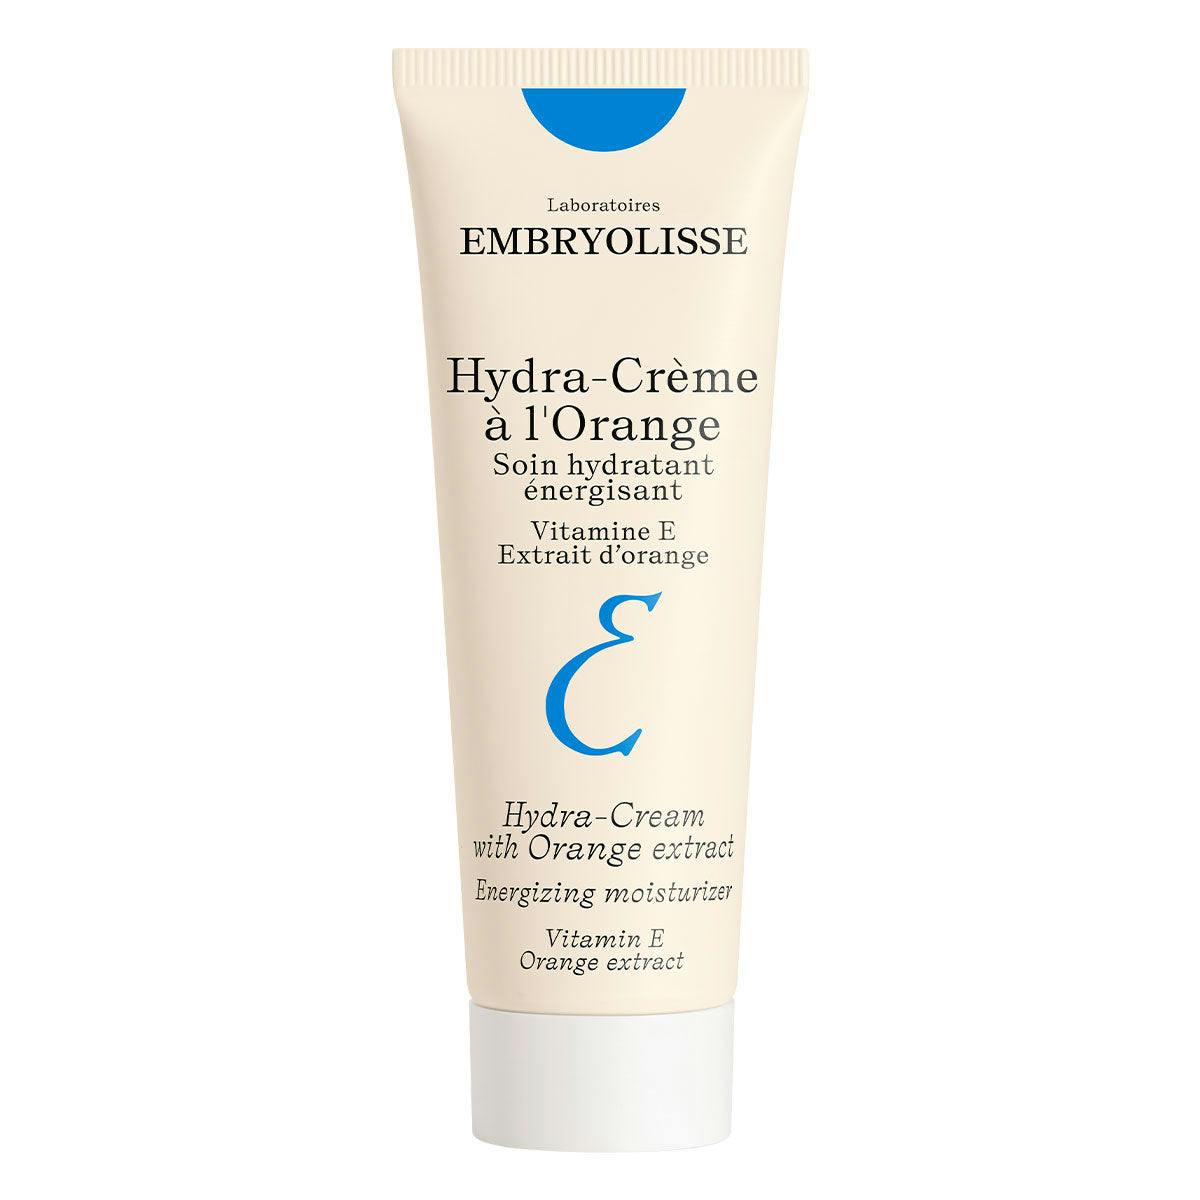 Embryolisse Hydra-Cream with Orange Extract